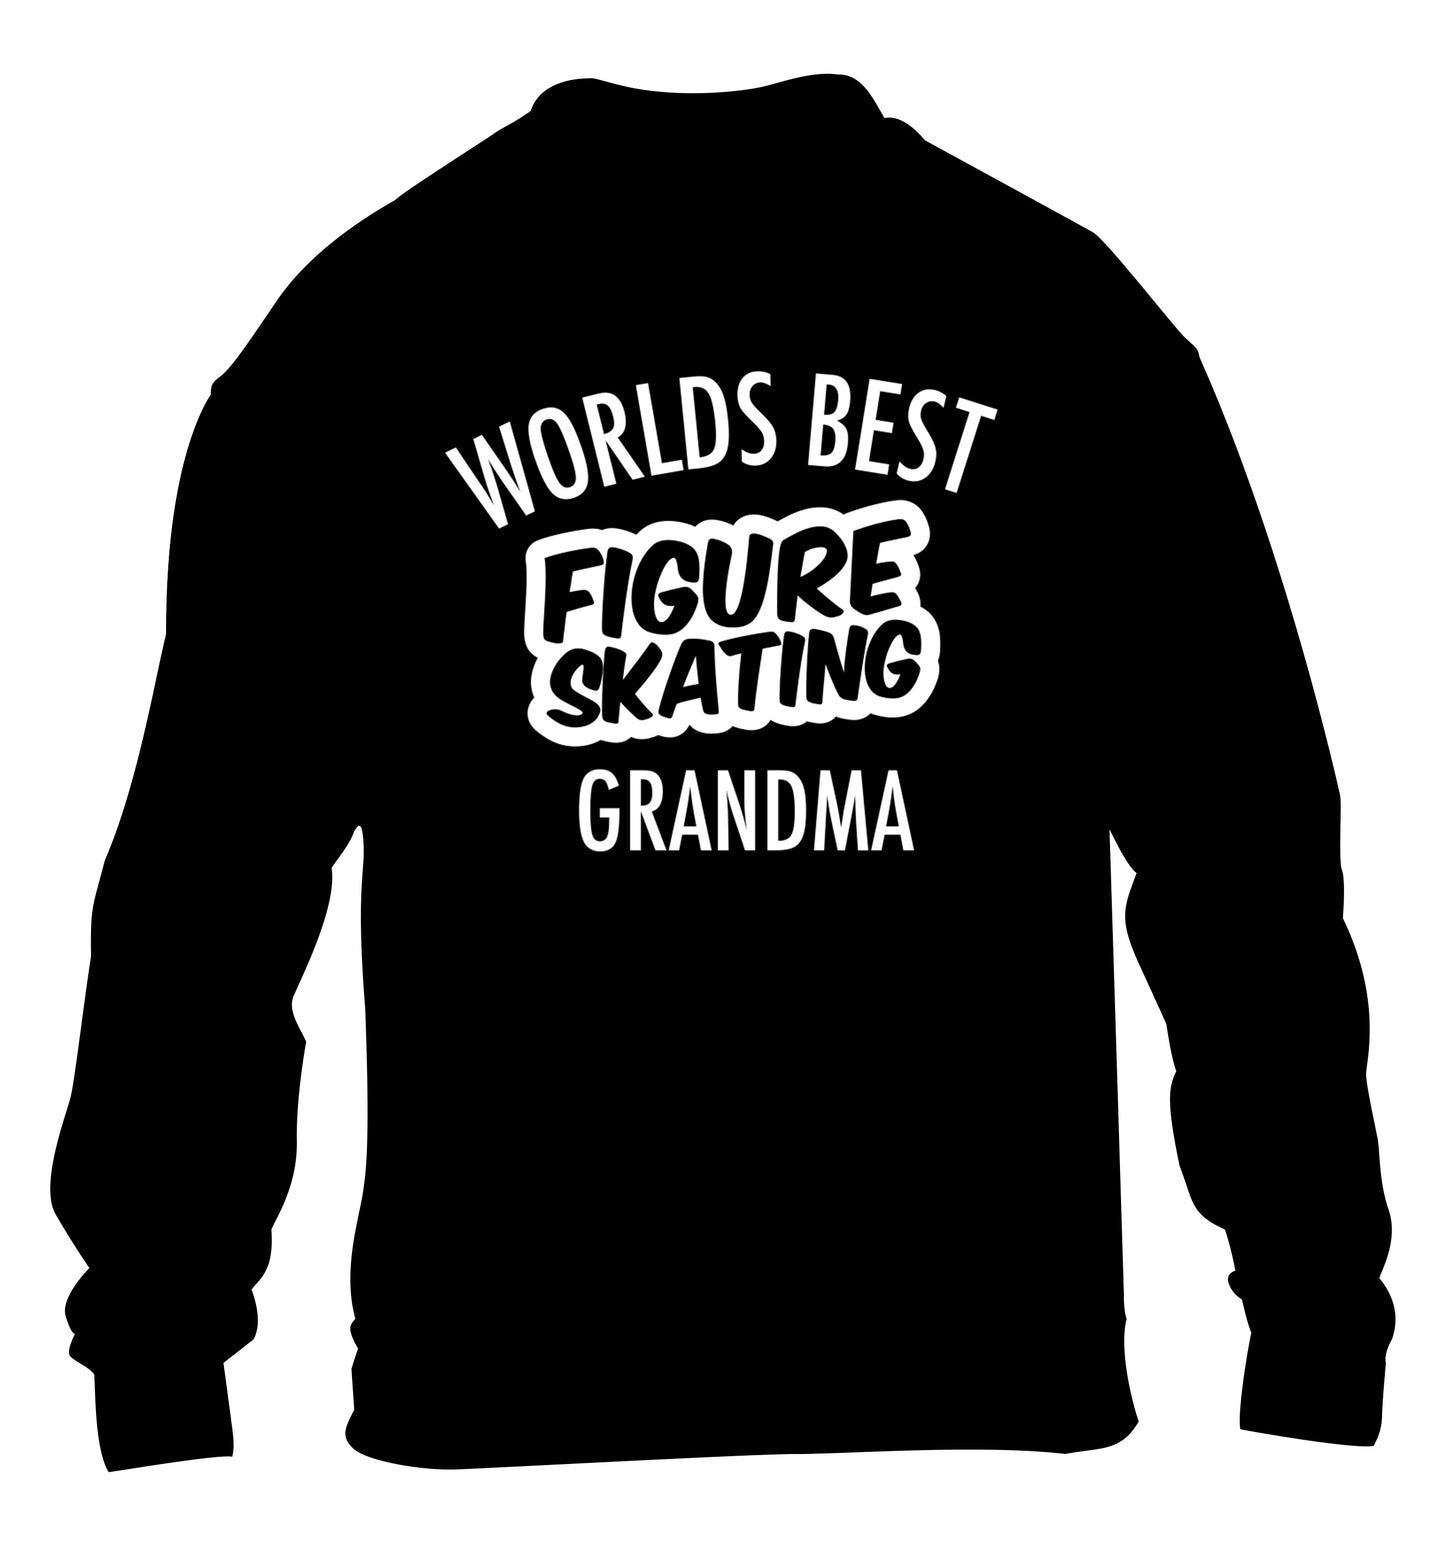 Worlds best figure skating grandma children's black sweater 12-14 Years